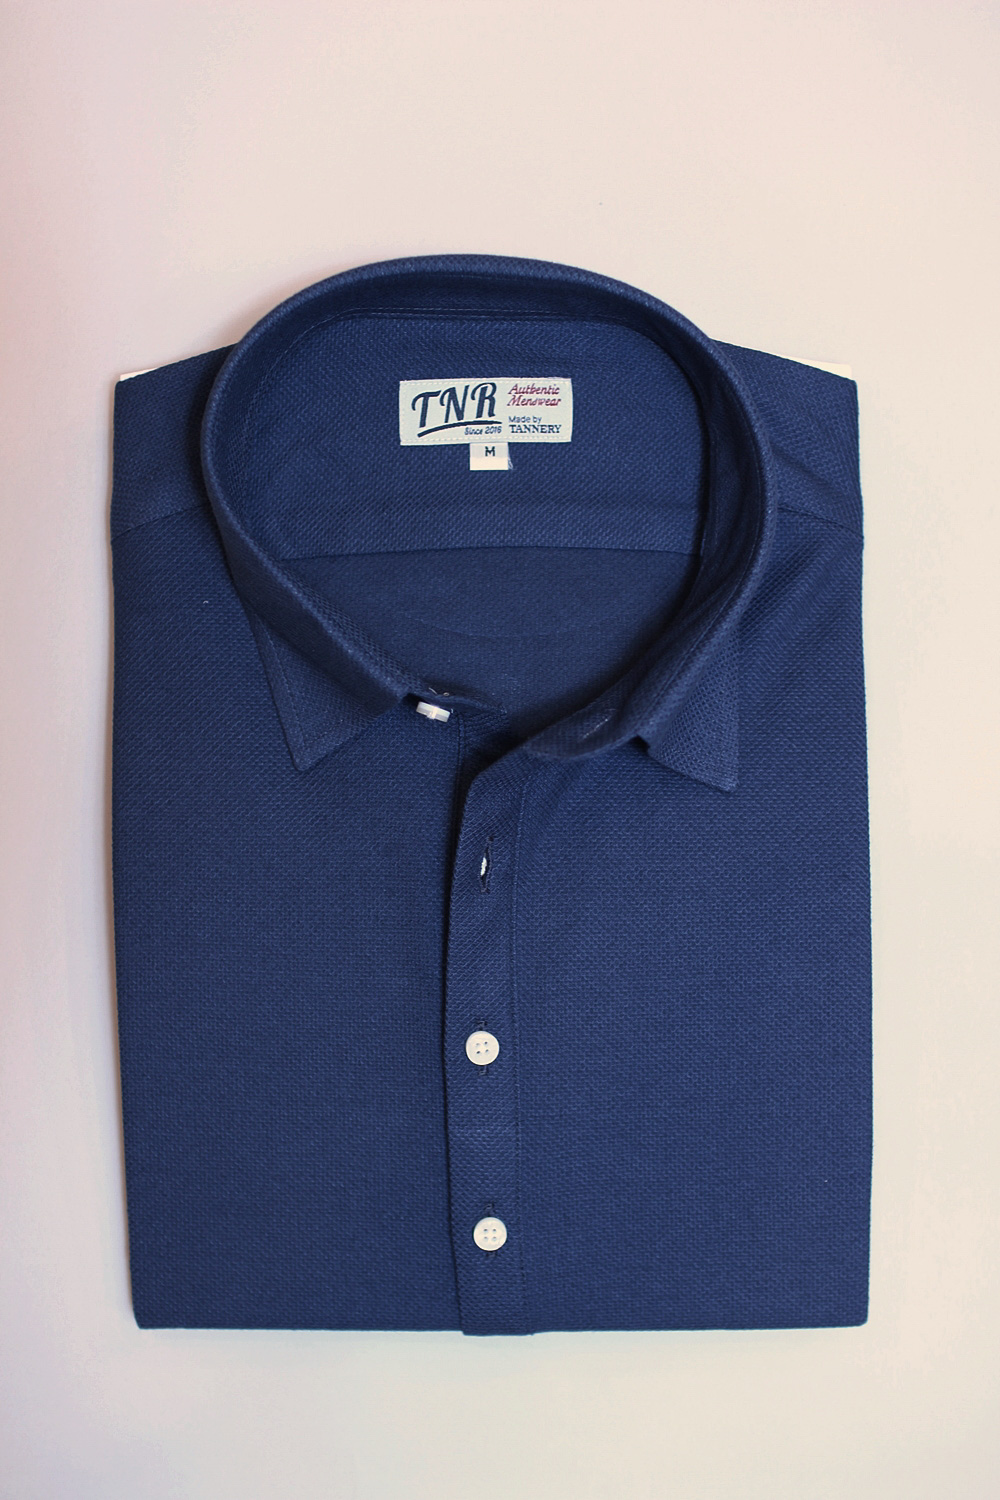 Jersey pullover shirt  BlueTNR(티엔알)